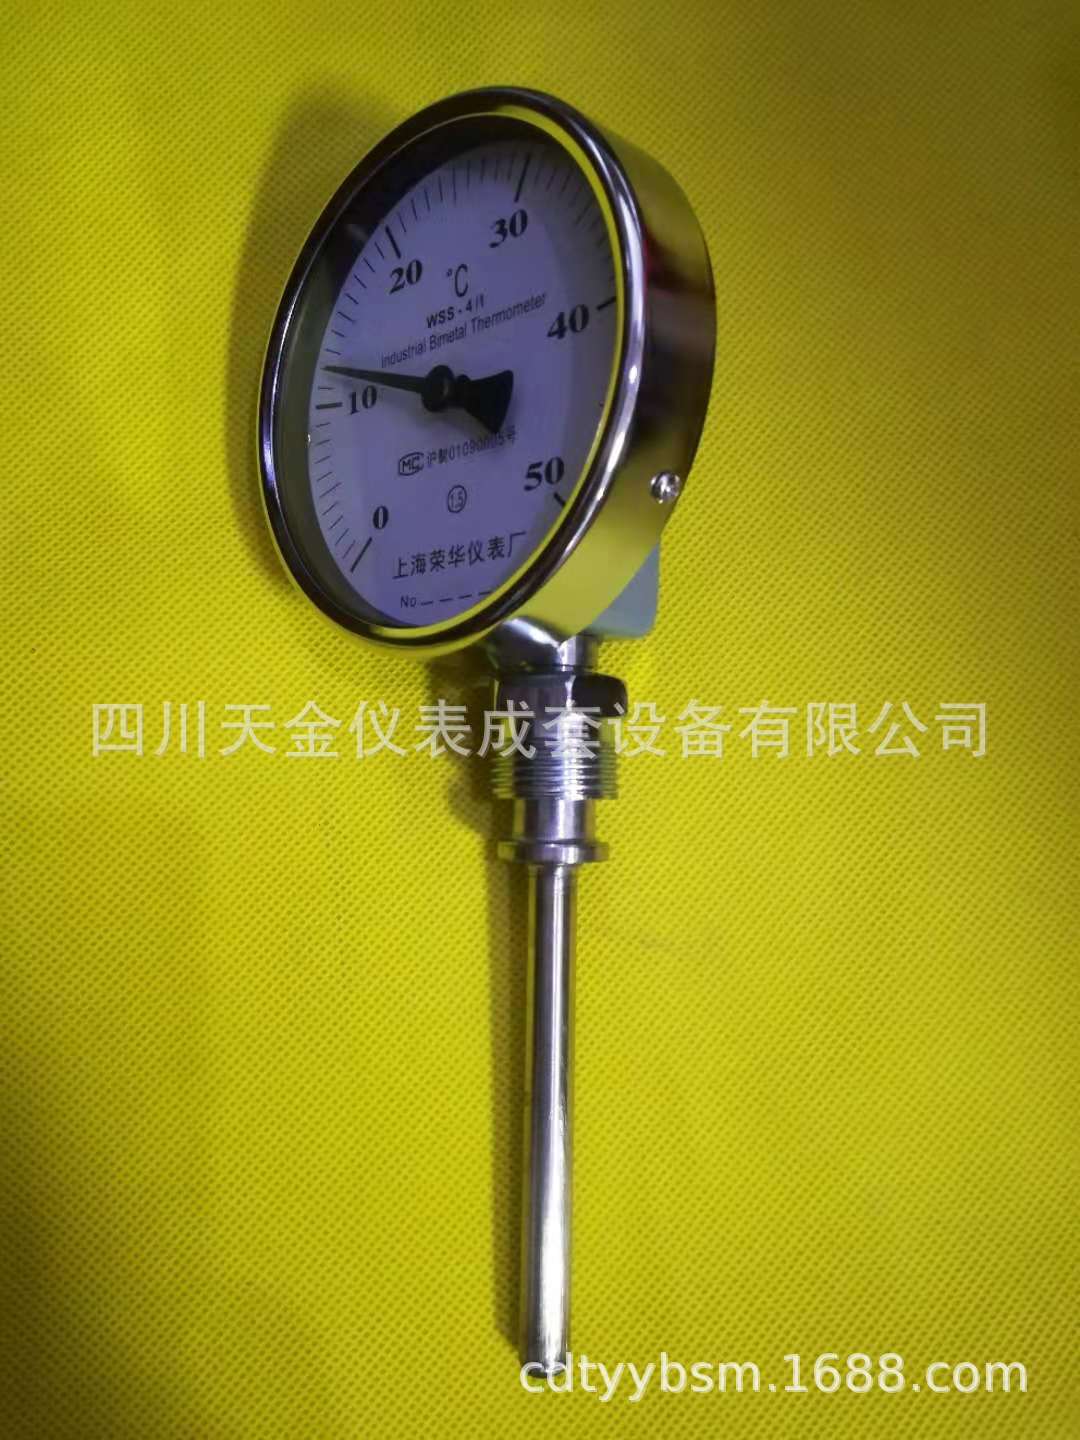 供应径向双金属温度计上海荣华双金属温度计WSS-411